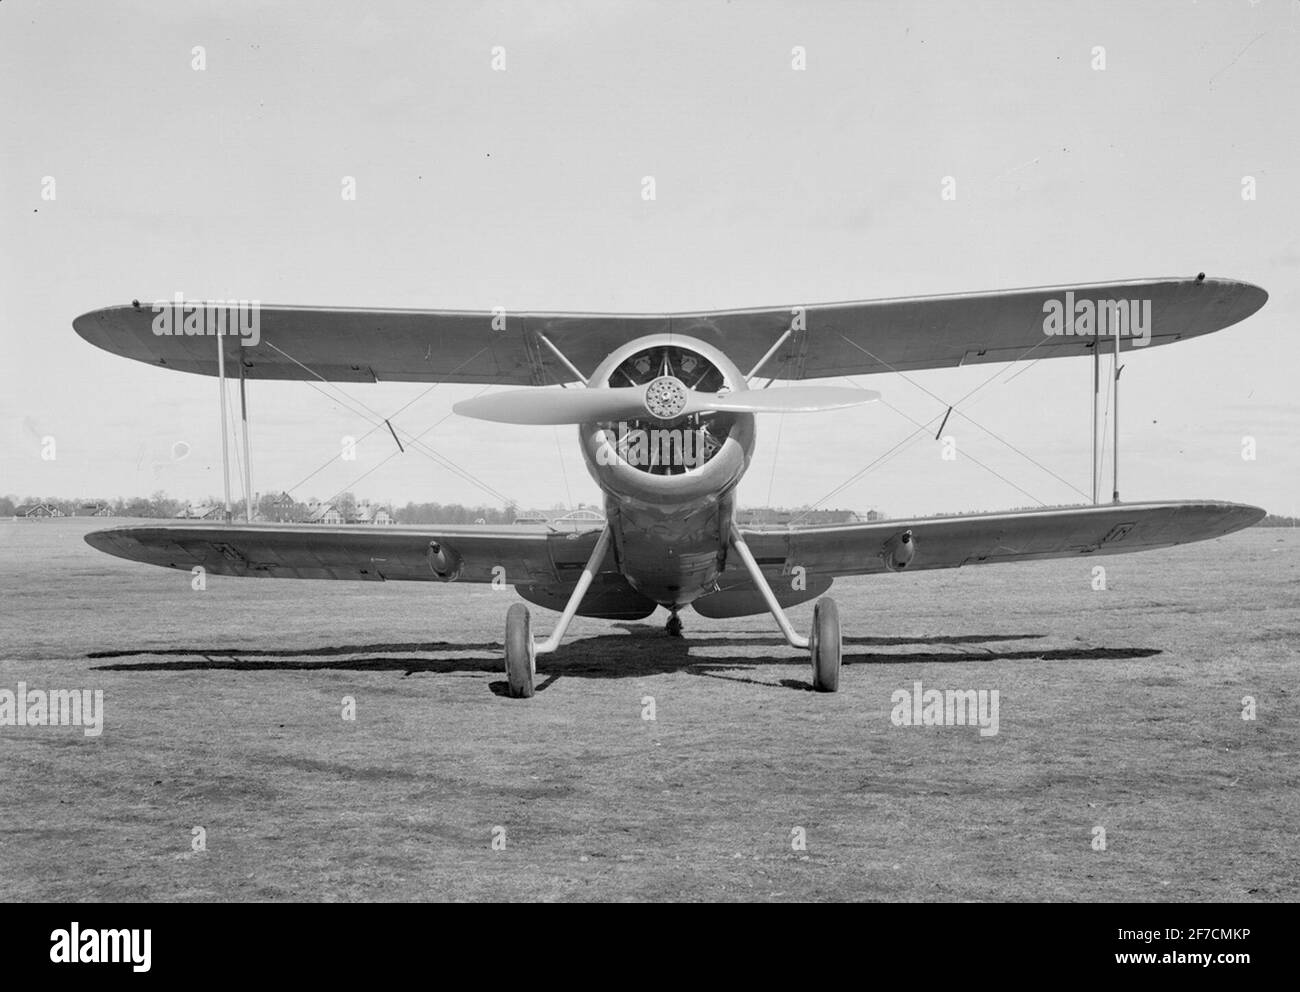 Flugzeug J 8 Gloster Gladiator . Flugzeug J 8 Gloster Gladiator markiert 6 steht auf Erz Flugplatz. Blick von vorne. Stockfoto